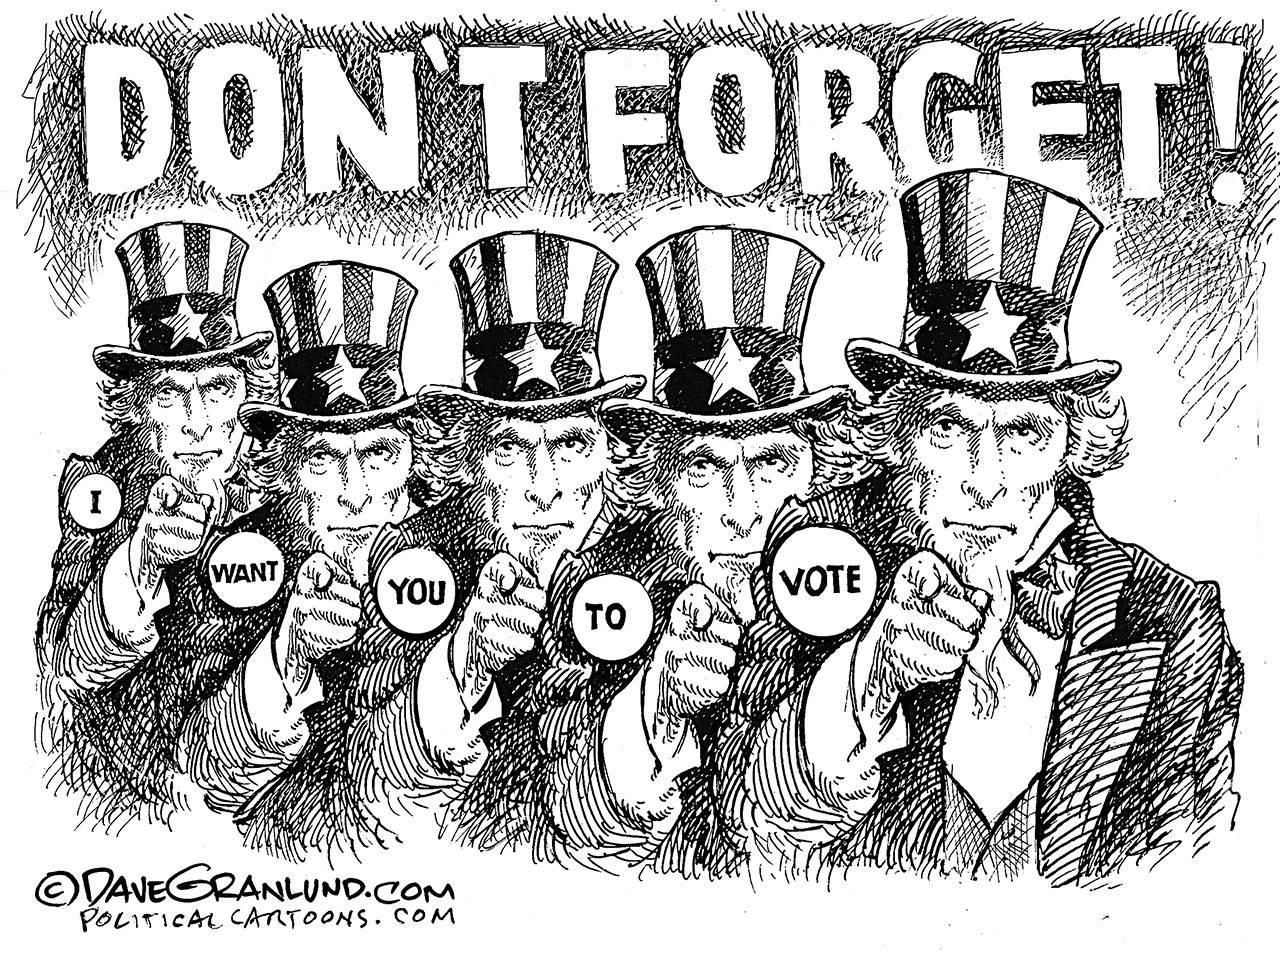 Dave Granlund, PoliticalCartoons.com